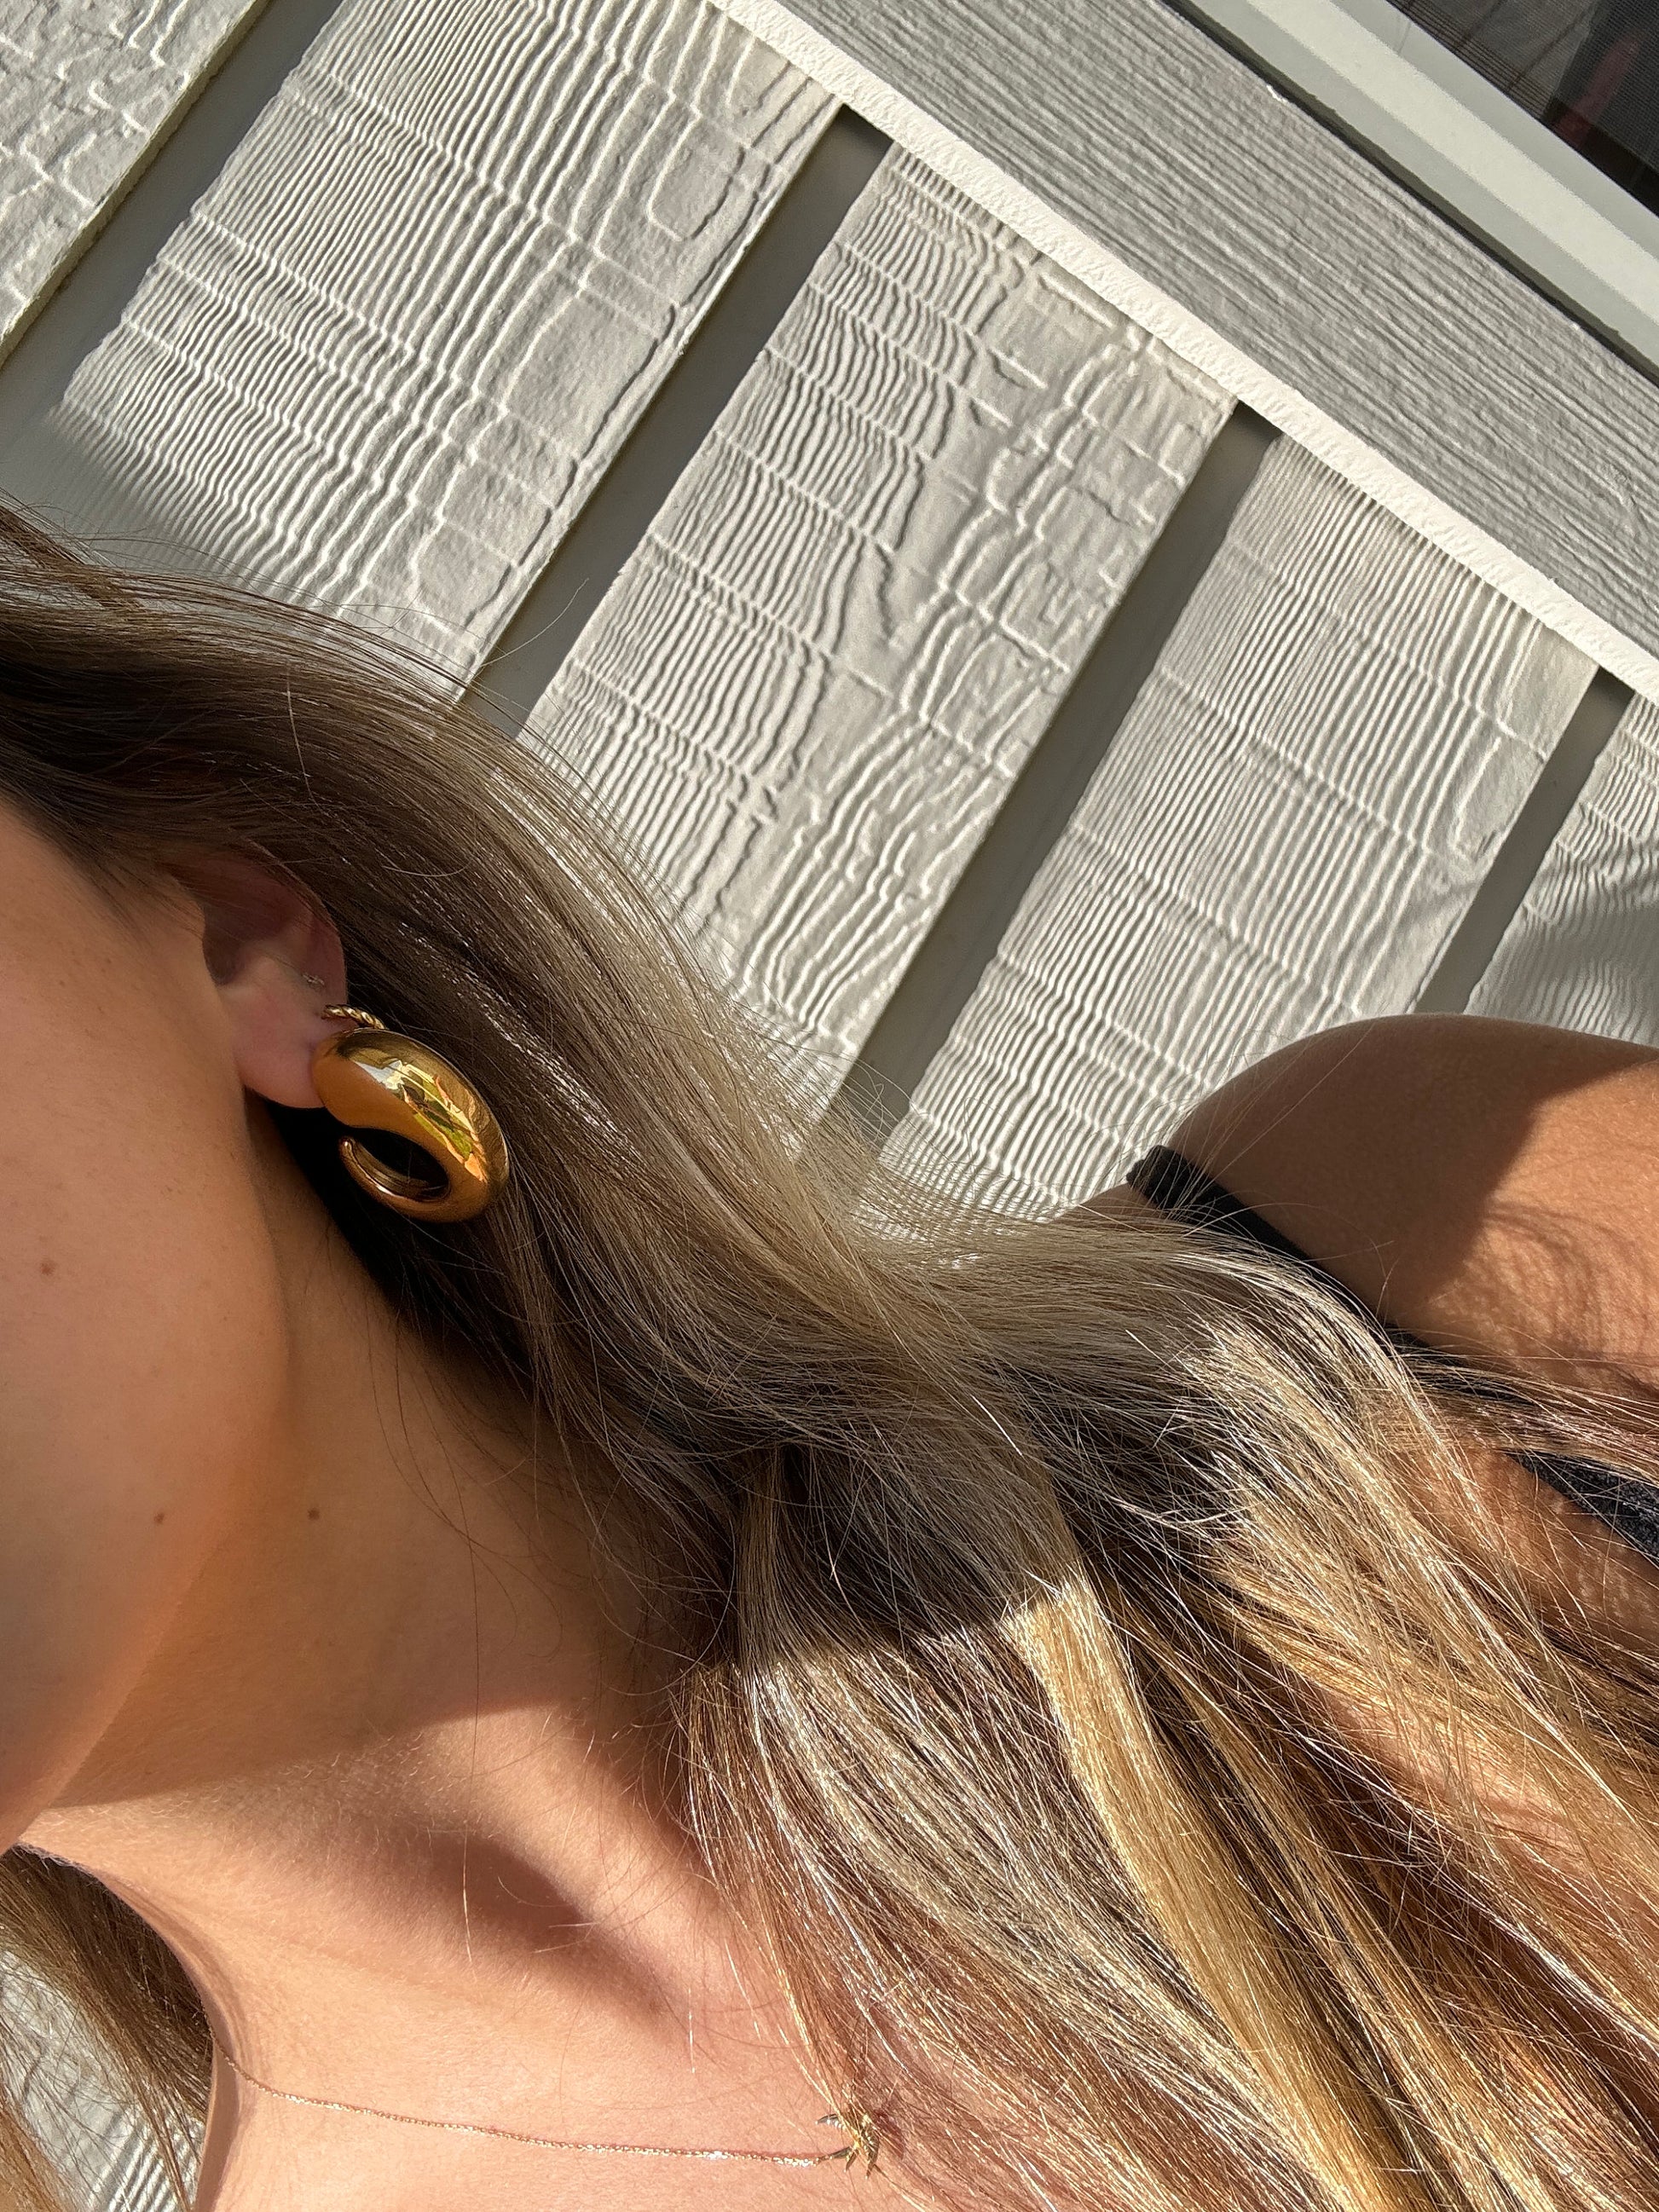 Wide hoop earrings, chunky gold earrings, thick vintage earrings, statement large gold earrings, bold minimalist gold hoops, chunky earrings